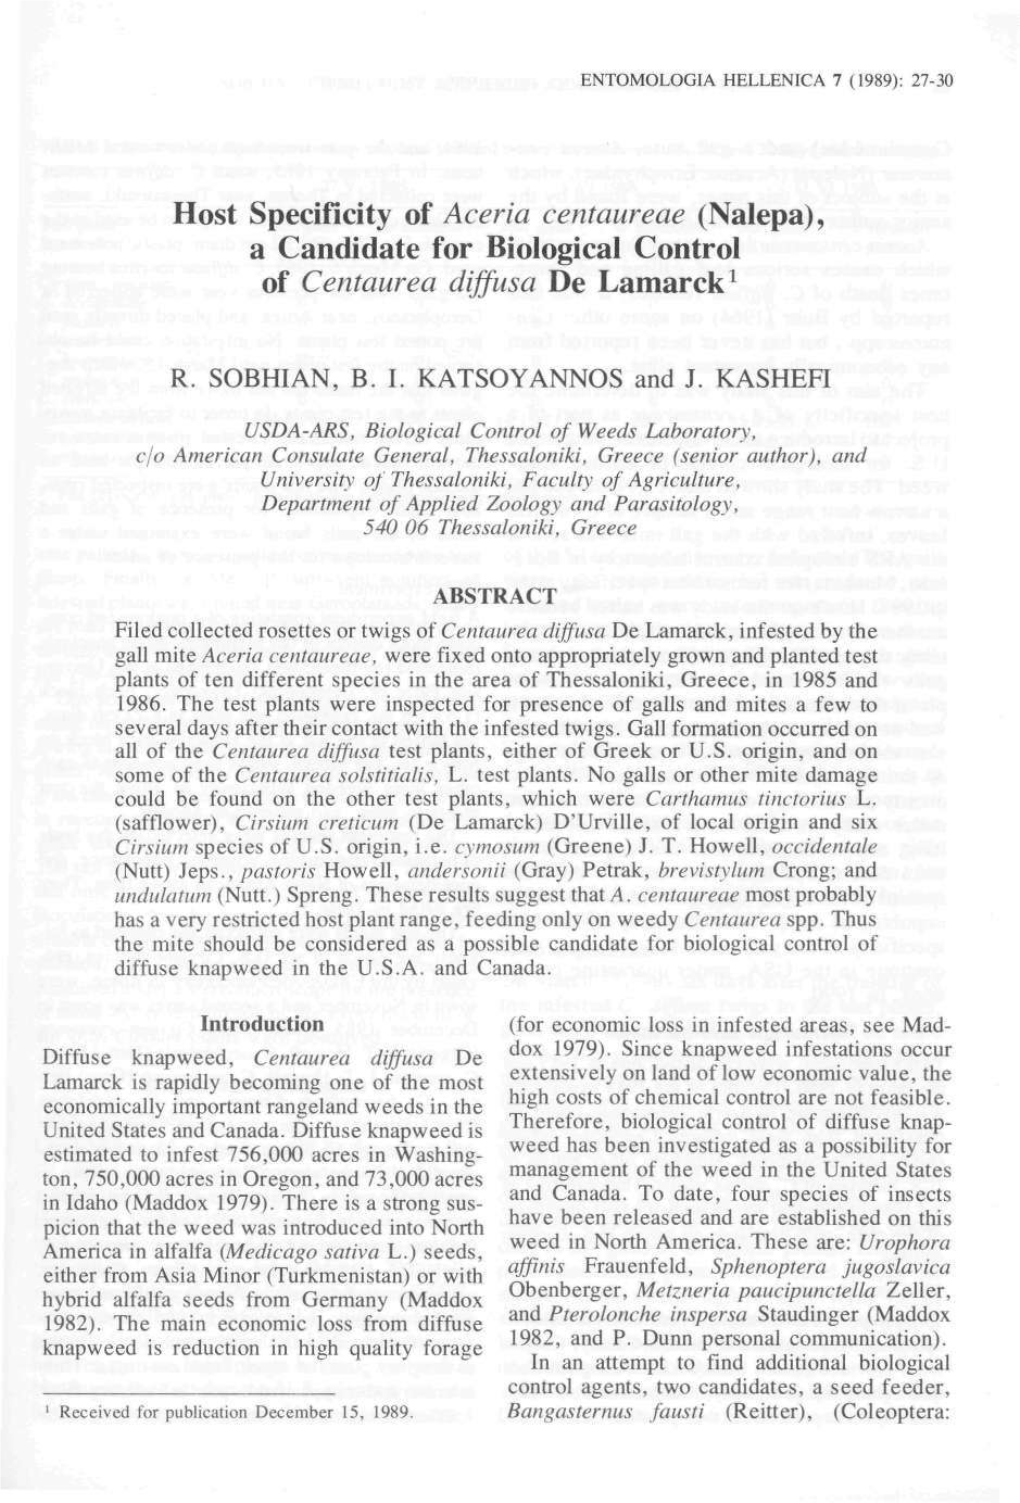 Host Specificity of Aceria Centaureae (Nalepa), a Candidate for Biological Control of Centaurea Diffusa De Lamarck1